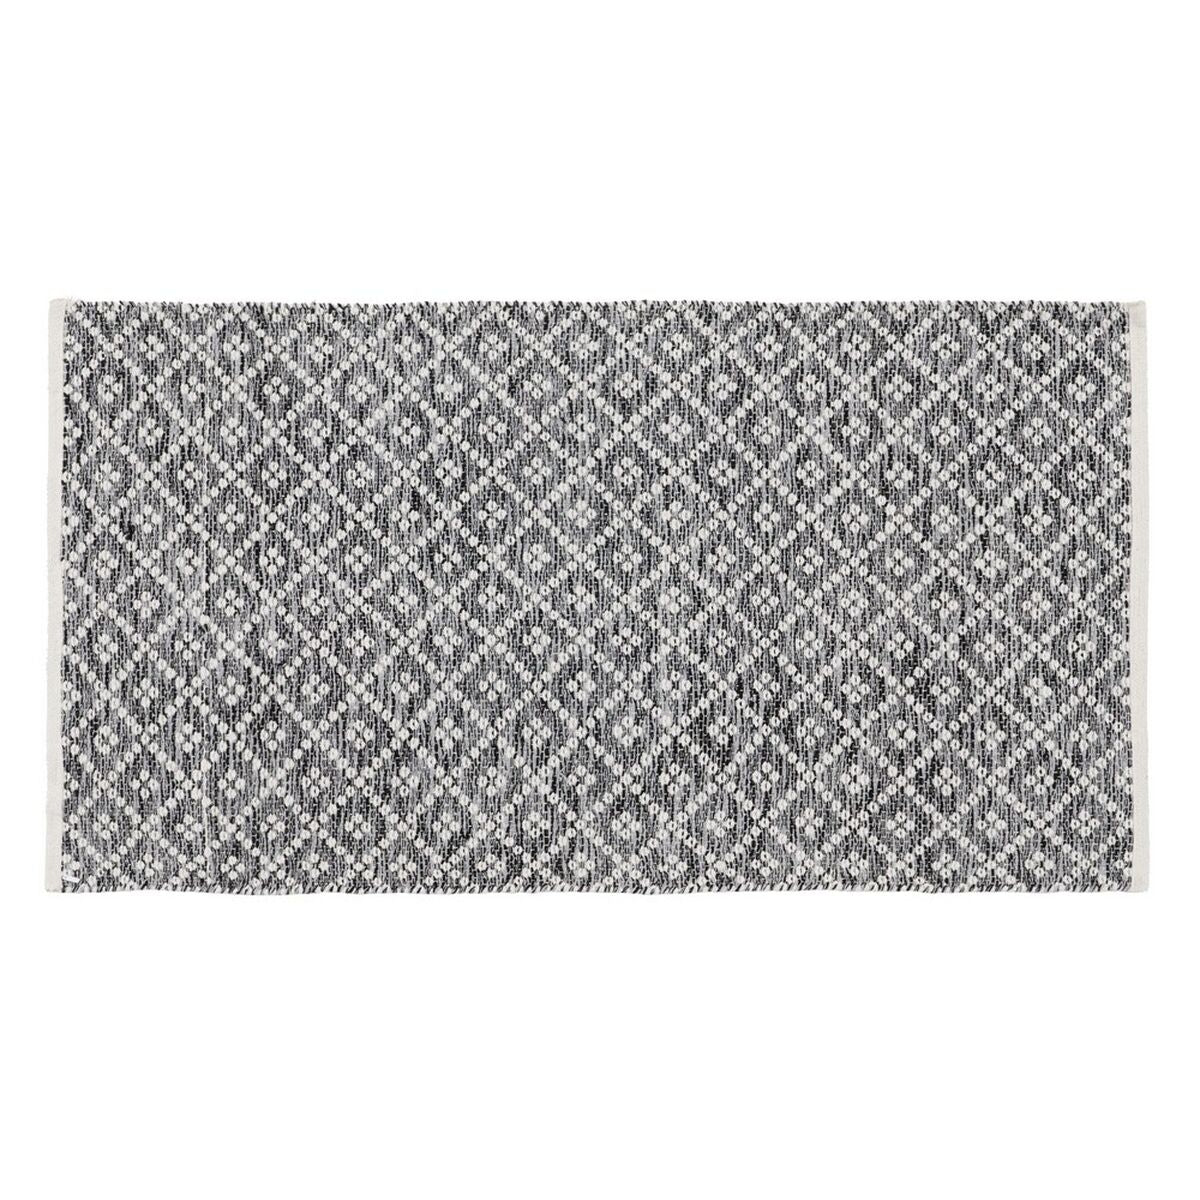 Teppich Weiß Grau 70 % Baumwolle 30 % Polyester 80 x 150 cm